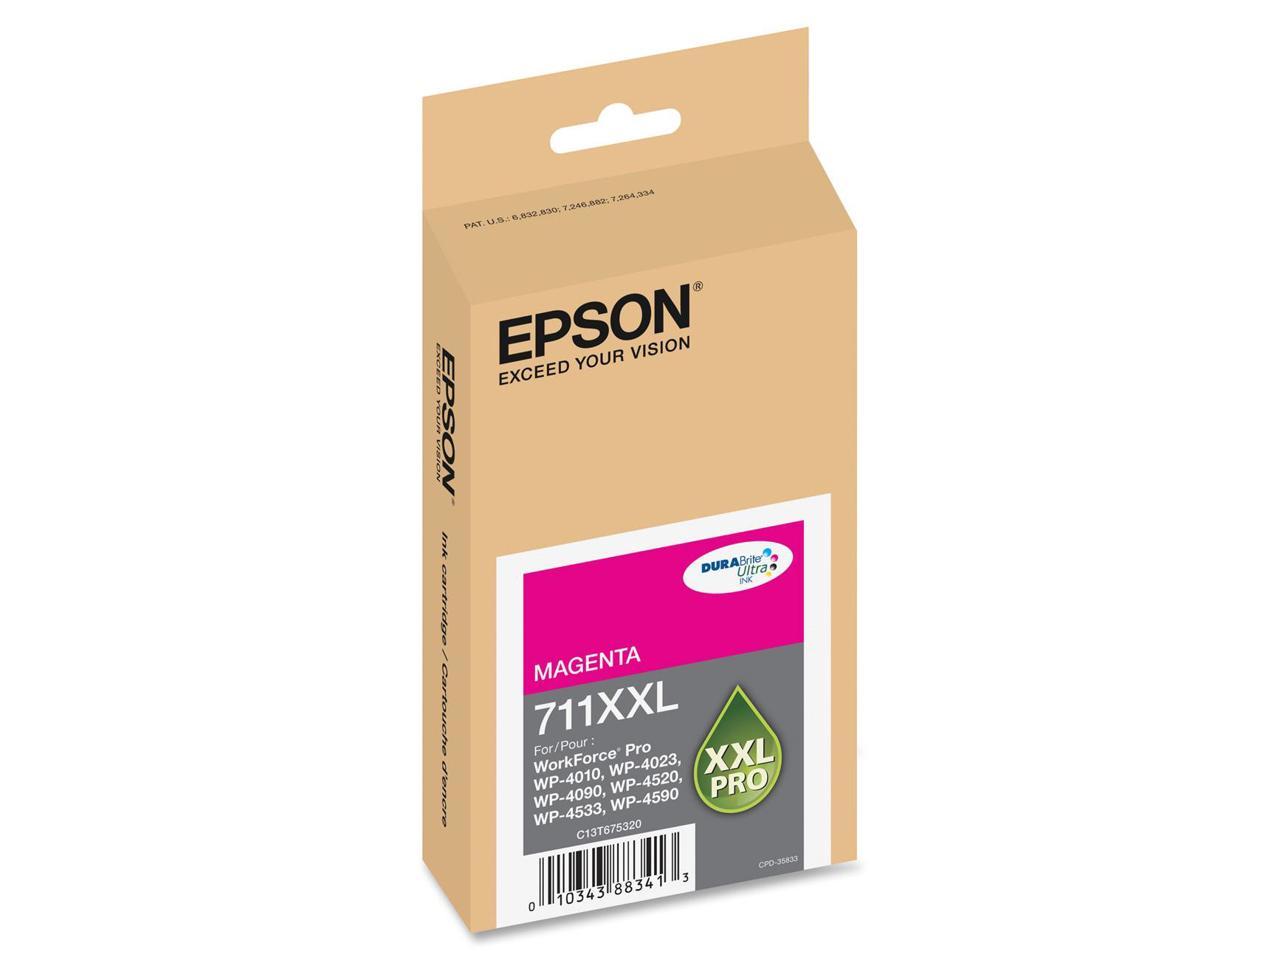 Epson DURABrite Ultra 711XXL Ink Cartridge - Magenta